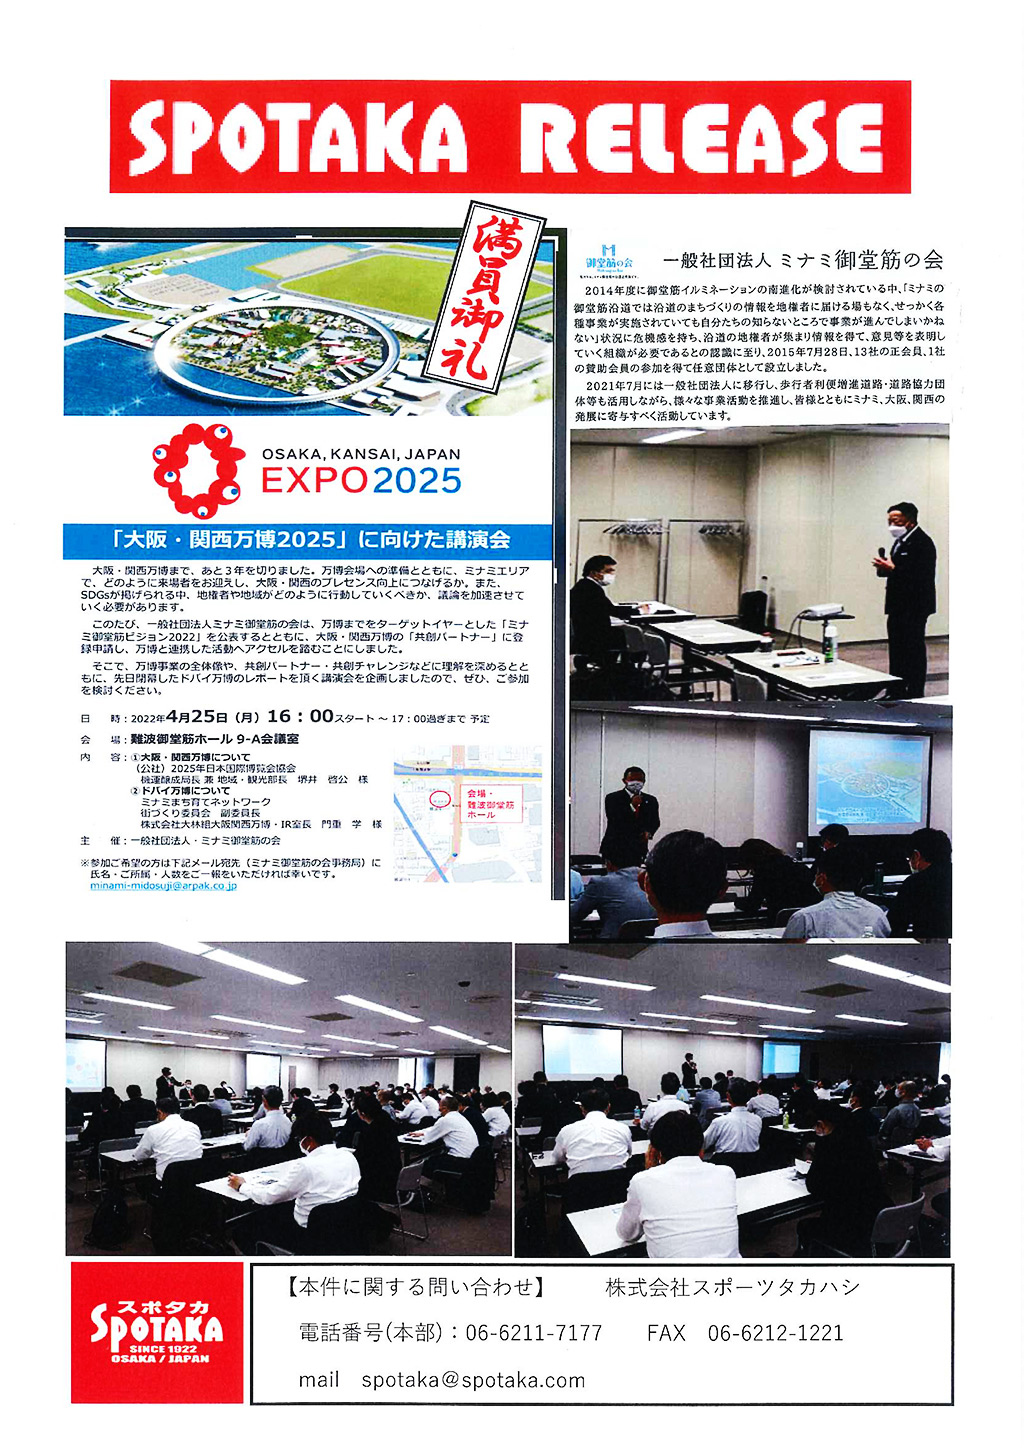 リリース情報更新『大阪・関西万博2025に向けた講演会』